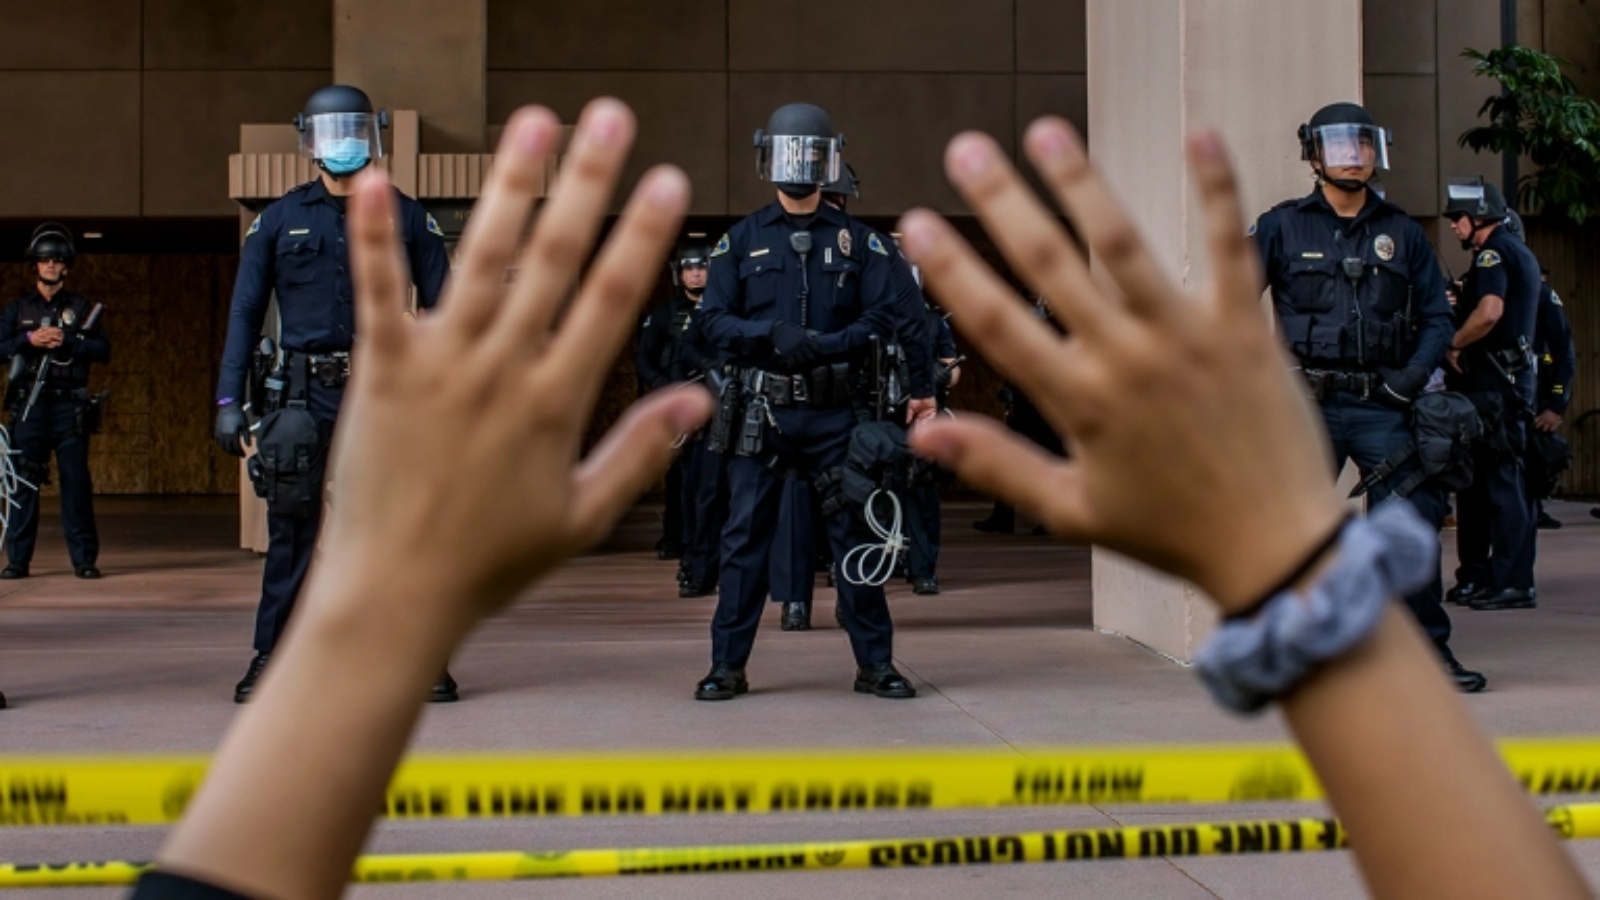 متظاهرة ترفع يديها وهي راكعة أمام الشرطة في سيتي هول في أنهايم، كاليفورنيا، 1 يونيو، 2020